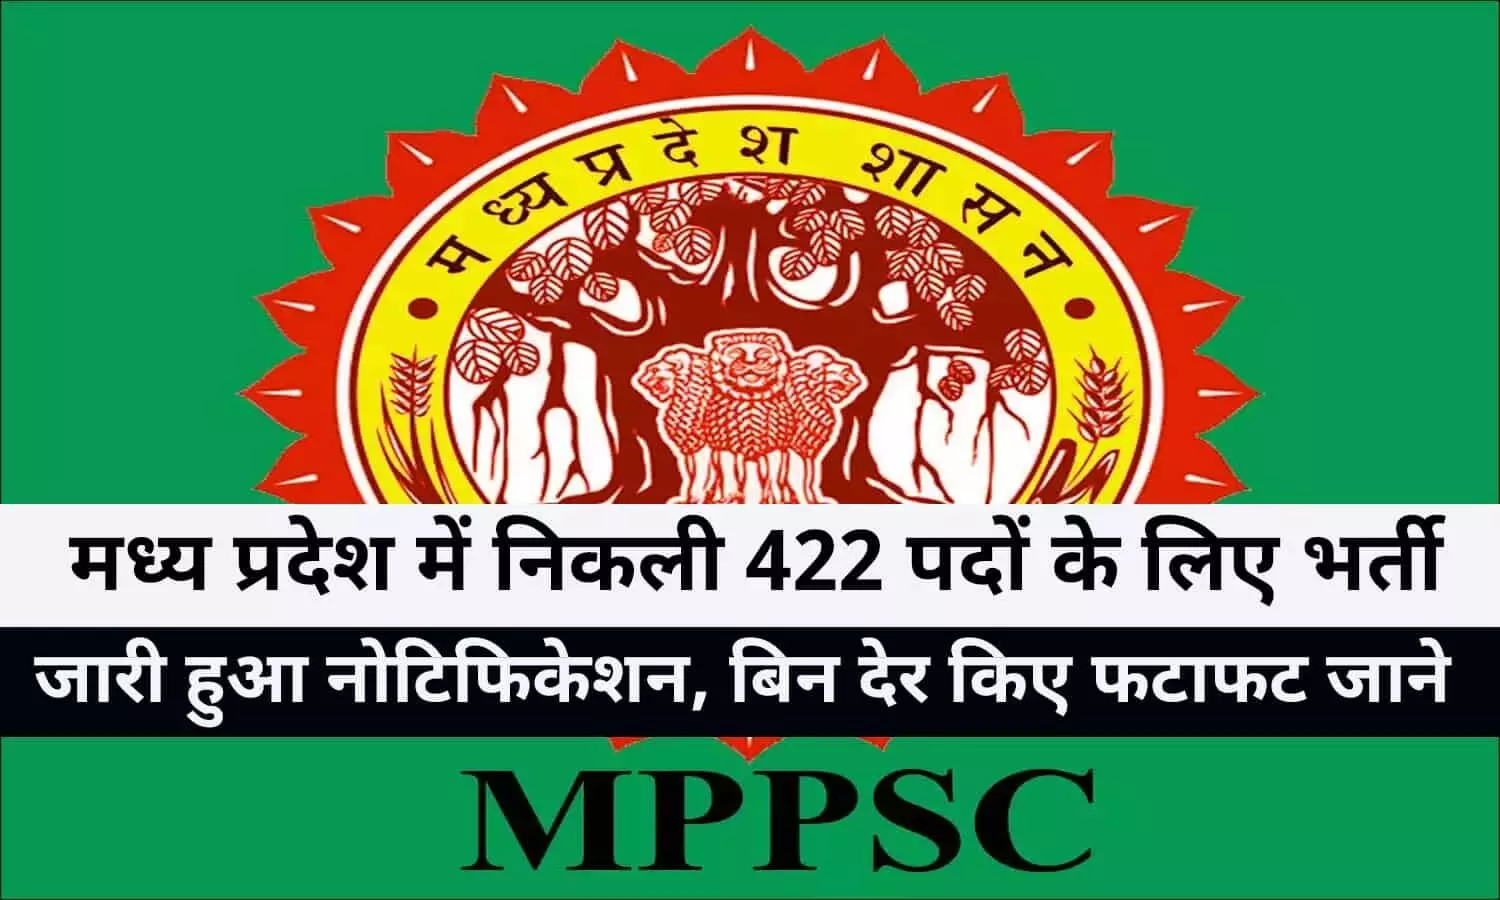 MPPSC Job Update 2022: मध्य प्रदेश में निकली 422 पदों के लिए भर्ती, जारी हुआ नोटिफिकेशन, बिन देर किए फटाफट जाने